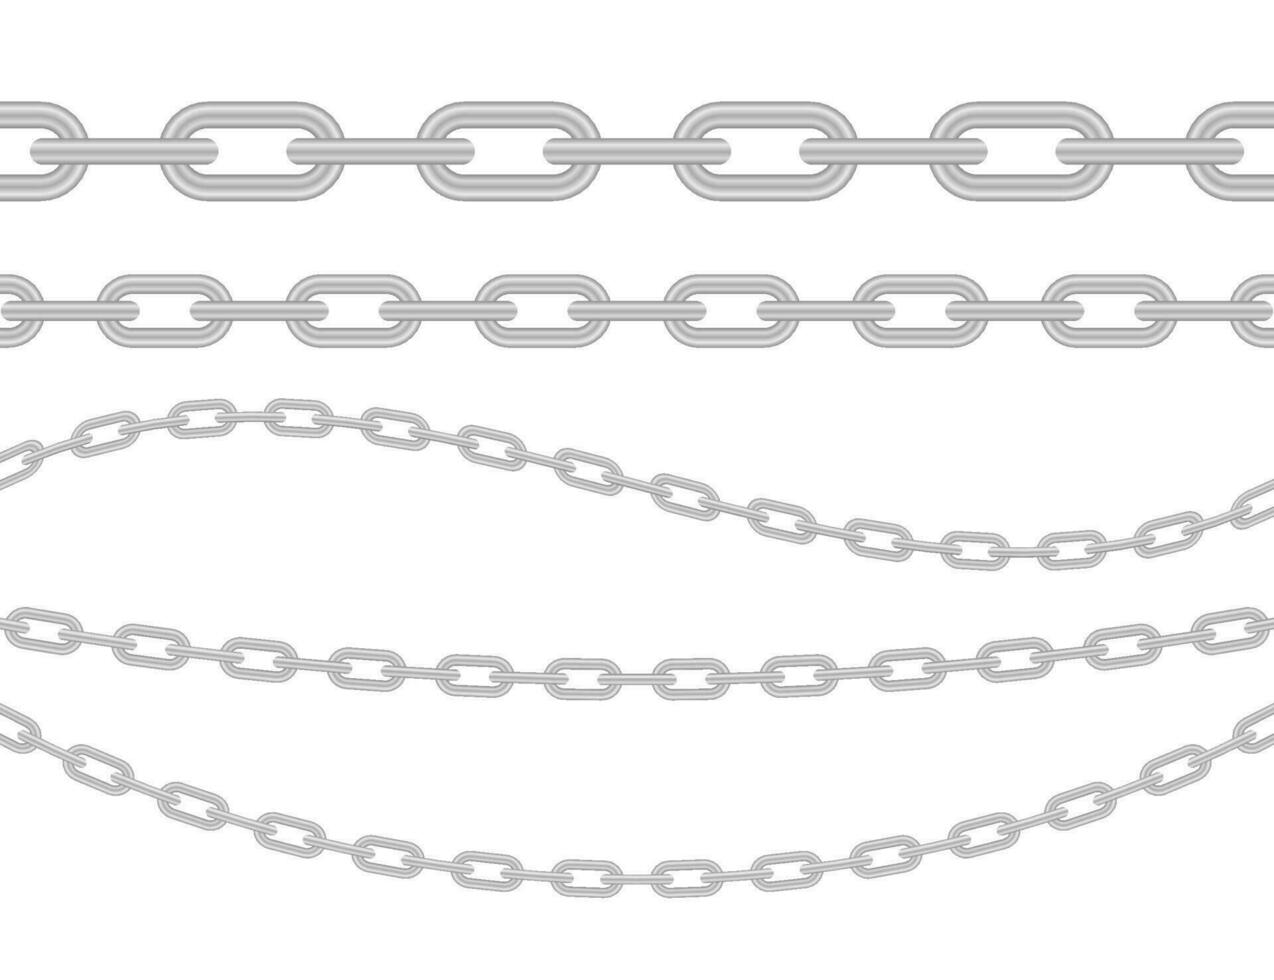 metálico cadena. bloquear cadena. colección de sin costura metal cadenas de colores plata. vector valores ilustración